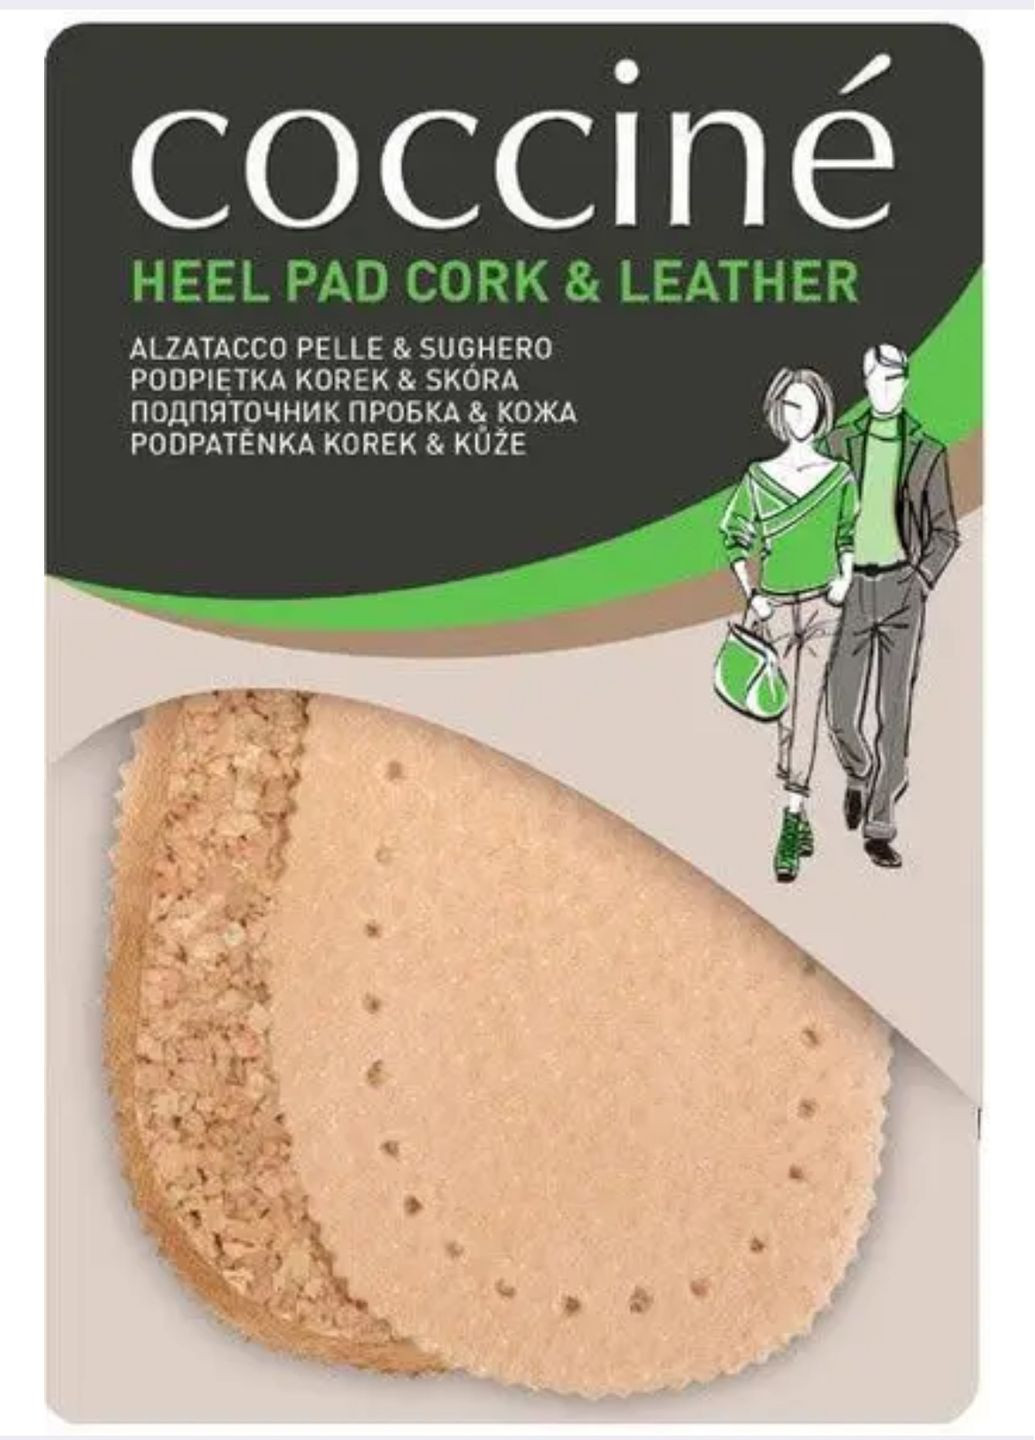 Підп'ятник шкіряний на корці. Натуральна шкіра Coccine heel pad cork — leather (282724596)